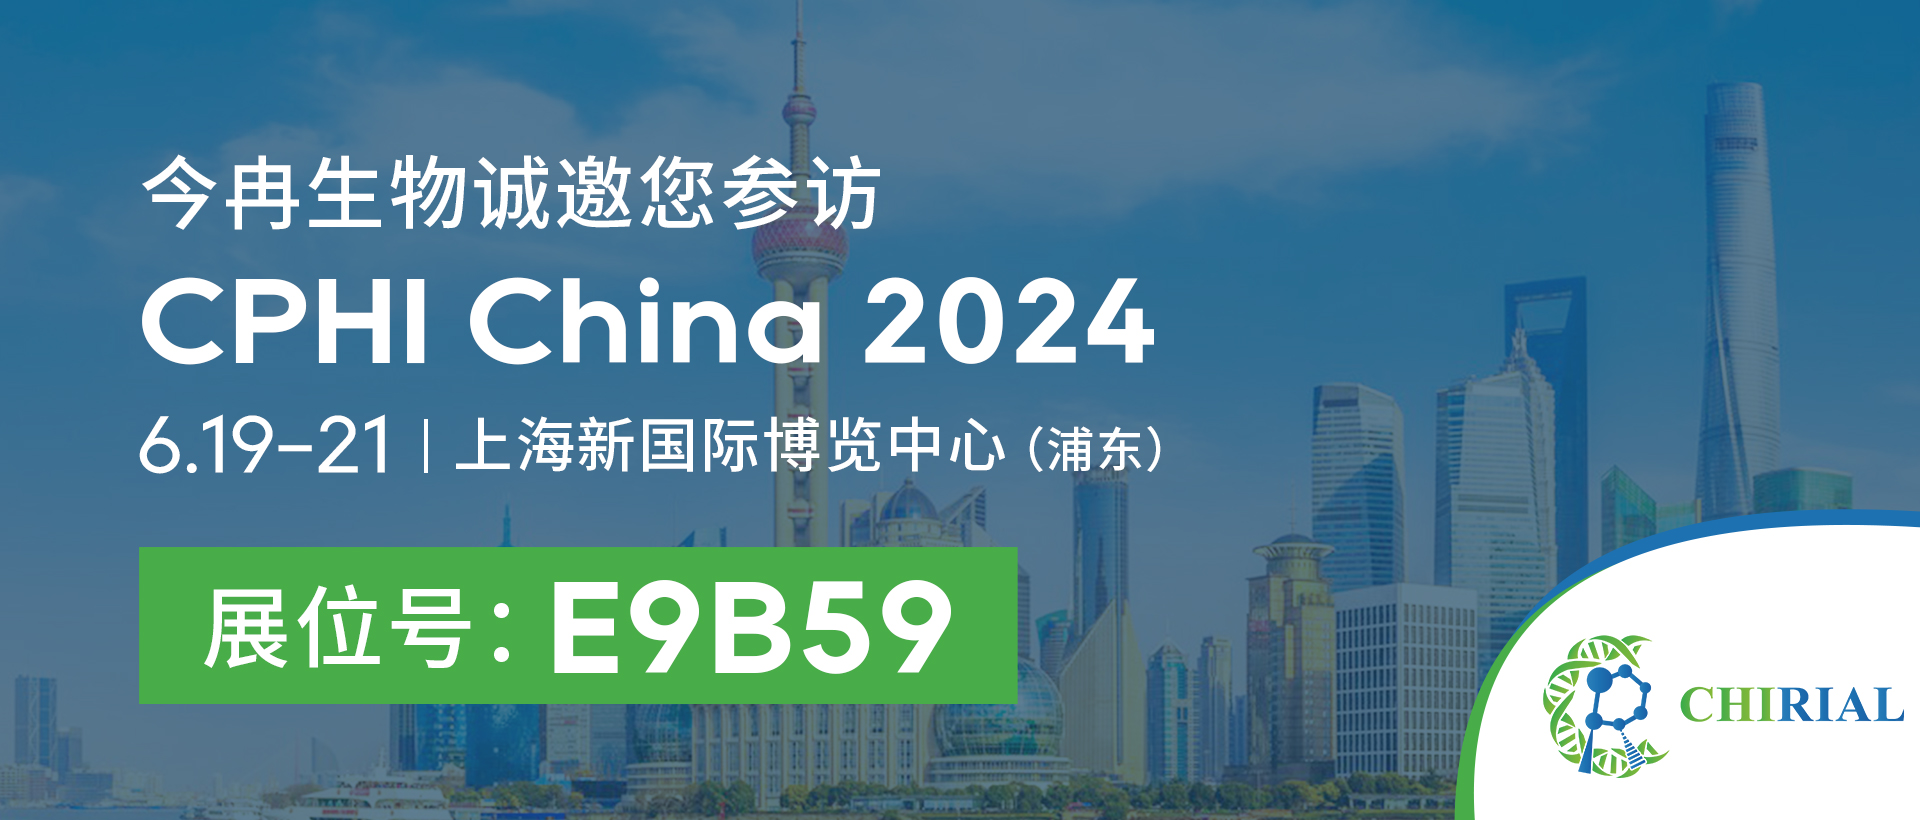 2024 सीपीएचआई प्रदर्शनी चीनी आधिकारिक वेबसाइट निमंत्रण पोस्टर